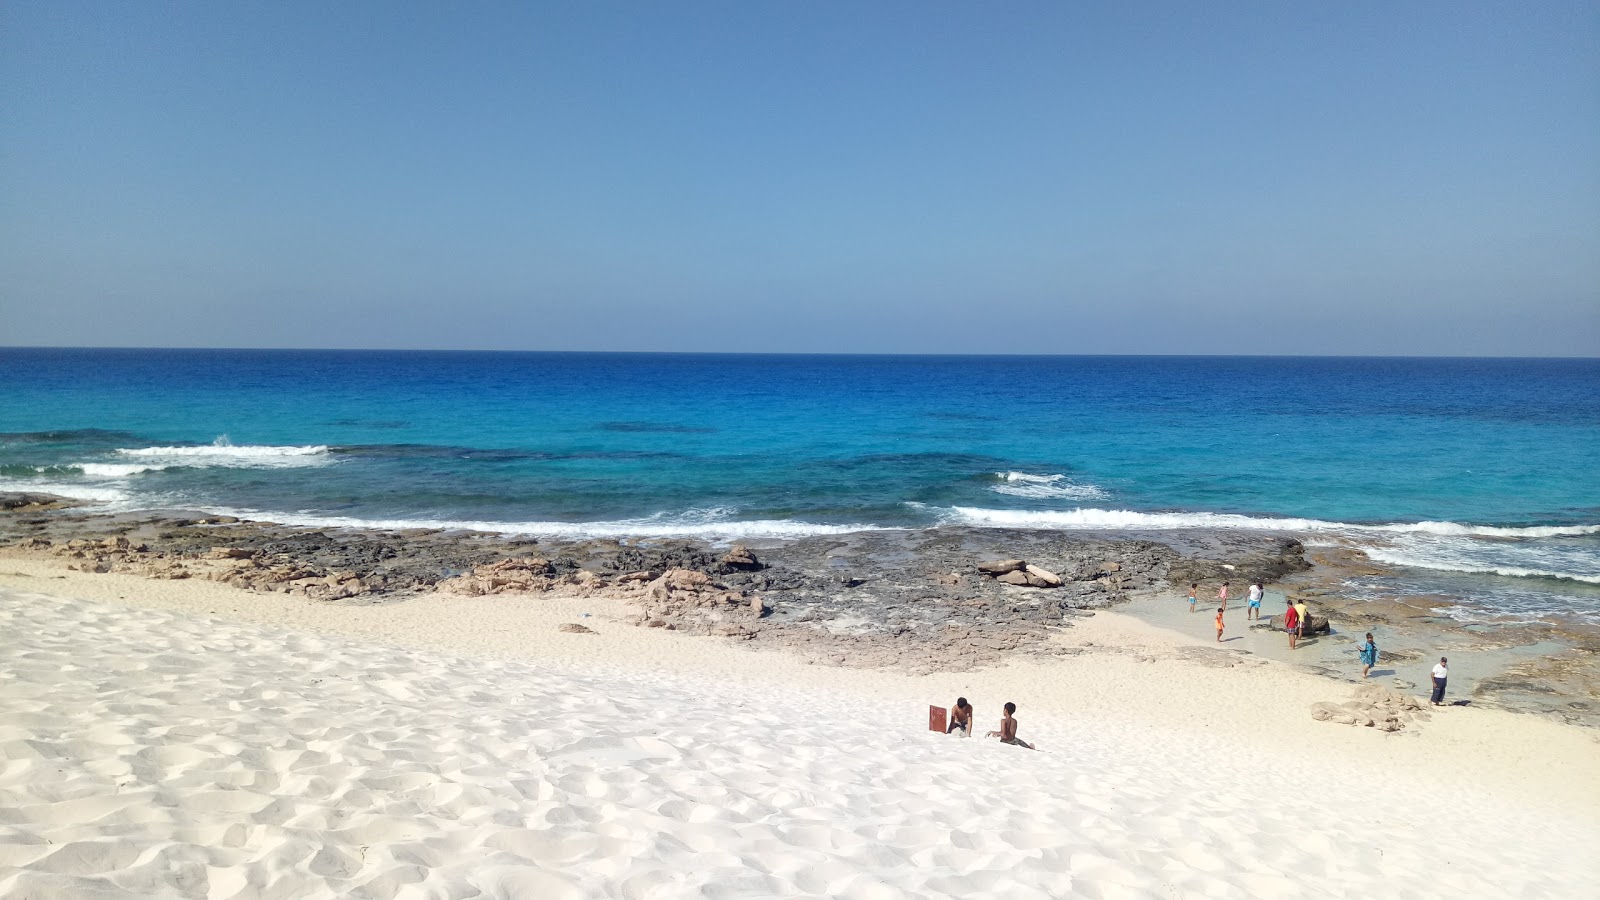 Fotografie cu Lagouna Beach - Marsa Matrouh - locul popular printre cunoscătorii de relaxare